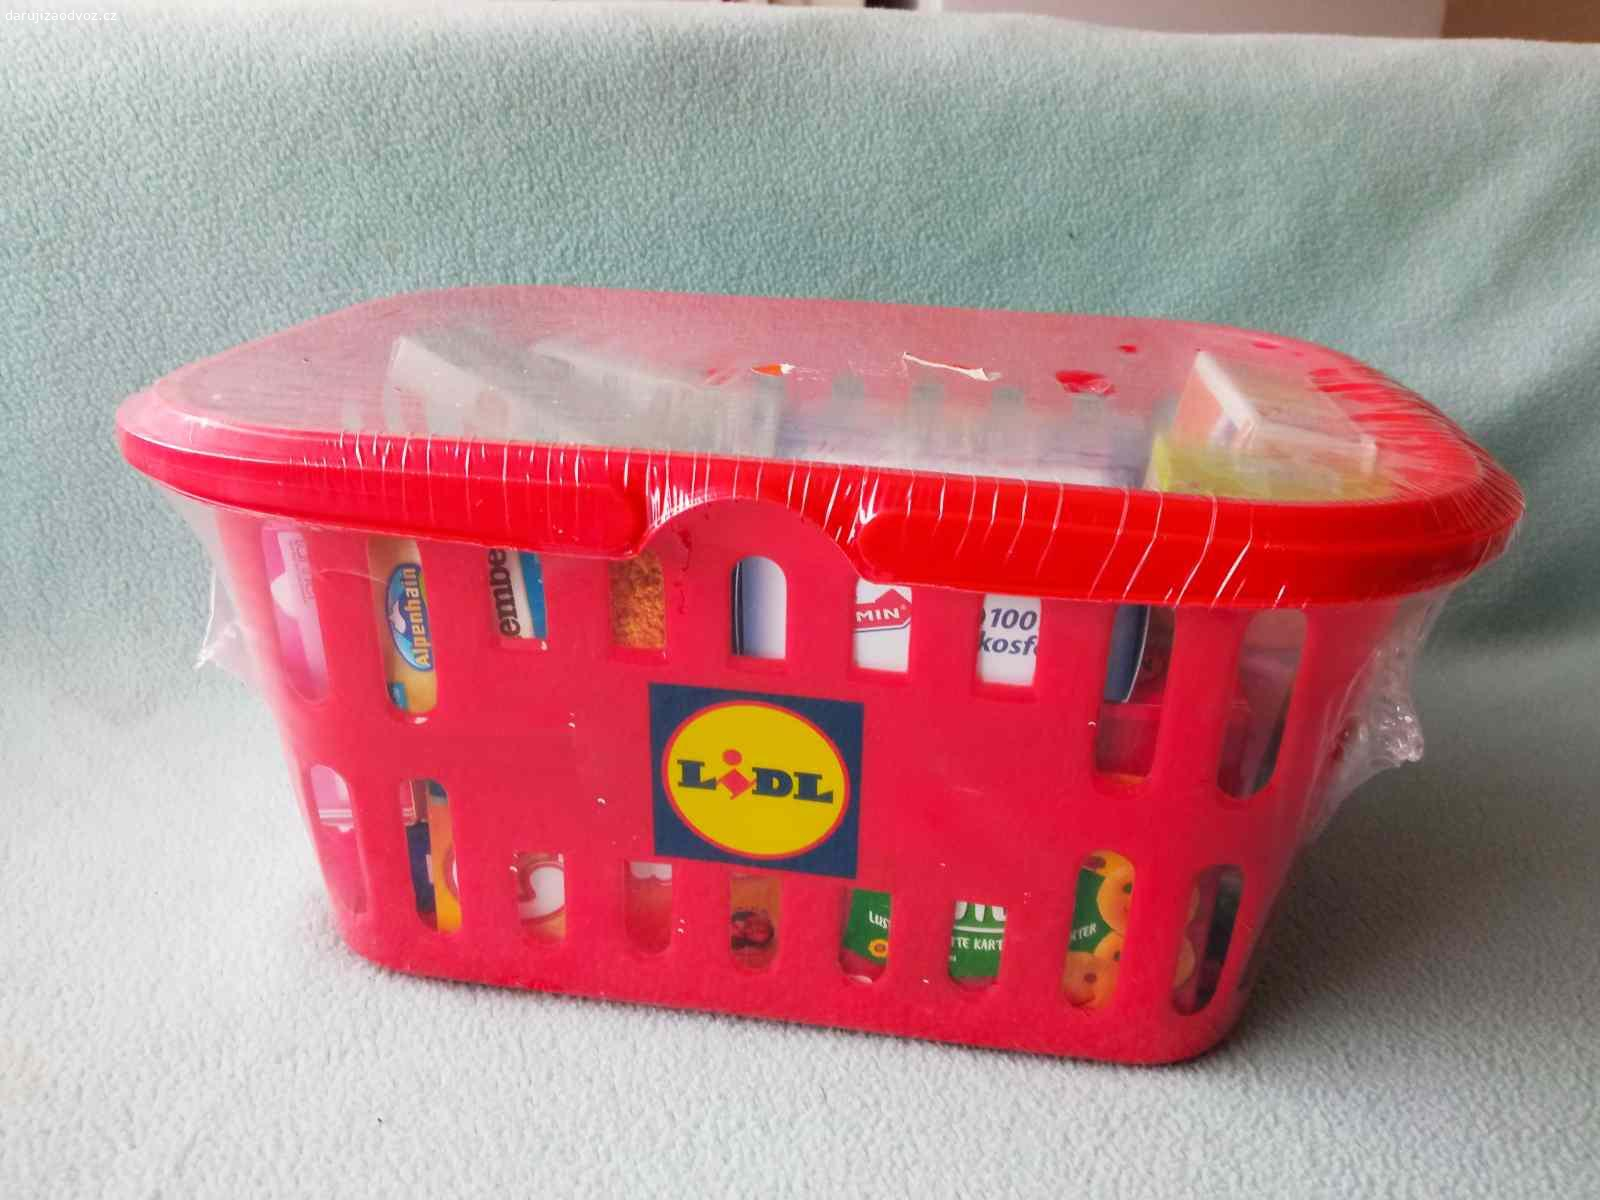 Dětský nákupní košík LIDL / nový/. Nákupní košík plný dětských hracích potravin / nové/, možno zaslat za 120 korun/ poštovné+ balné/